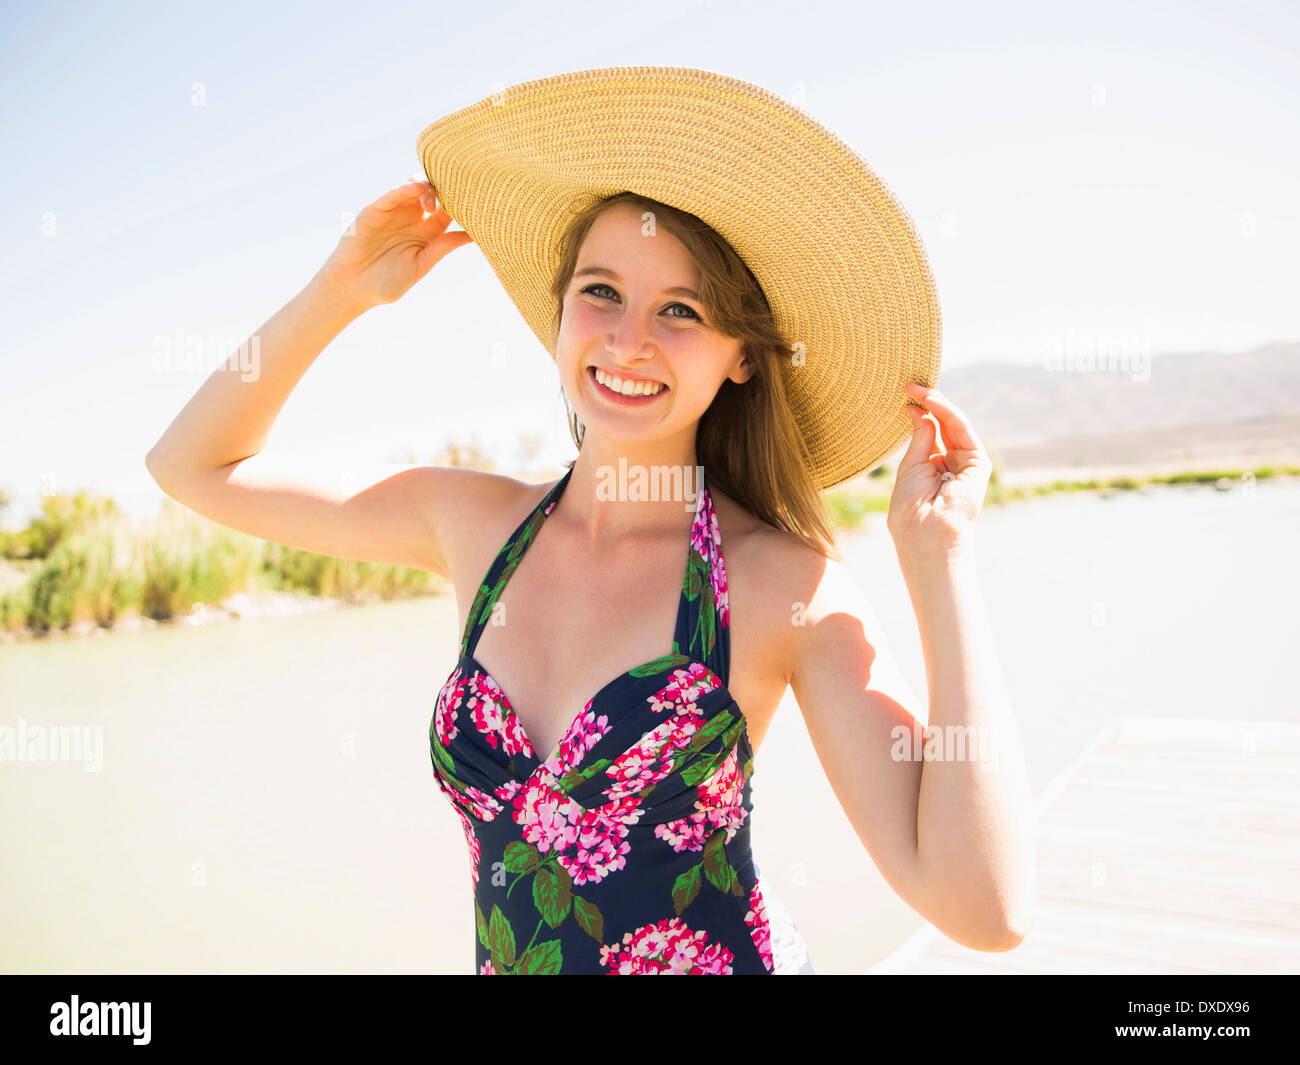 Ritratto di giovane donna che indossa cappello per il sole sulla spiaggia, Salt Lake City, Utah, Stati Uniti d'America Foto Stock